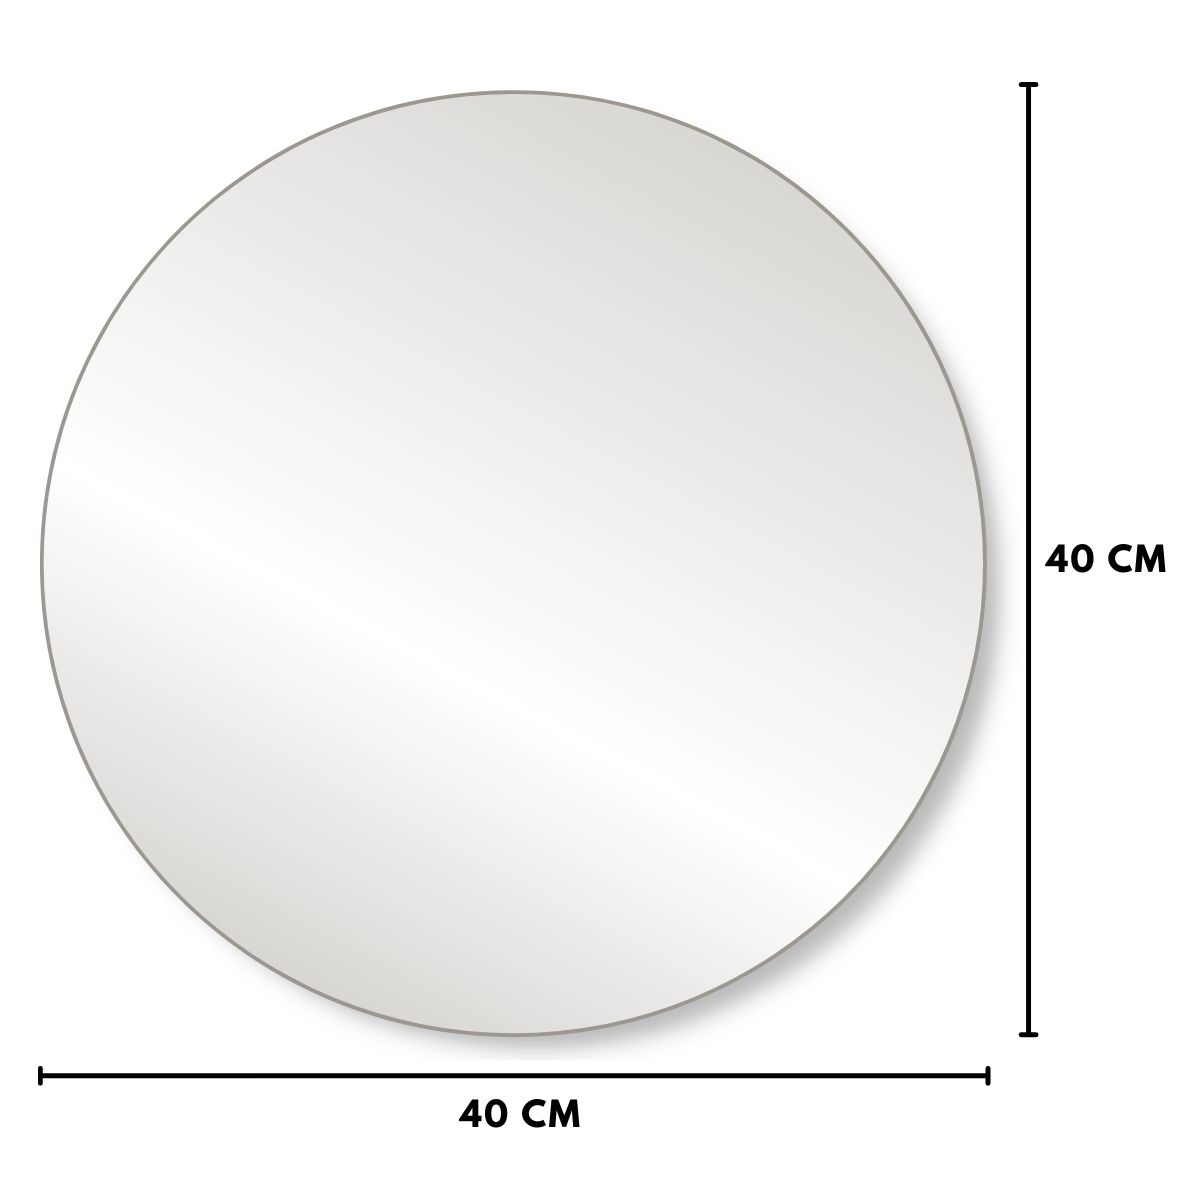 Kit com 10 Sousplat Espelho Redondo 40 CM Diâmetro Decoração Para Mesa - PKO  - CARMEL